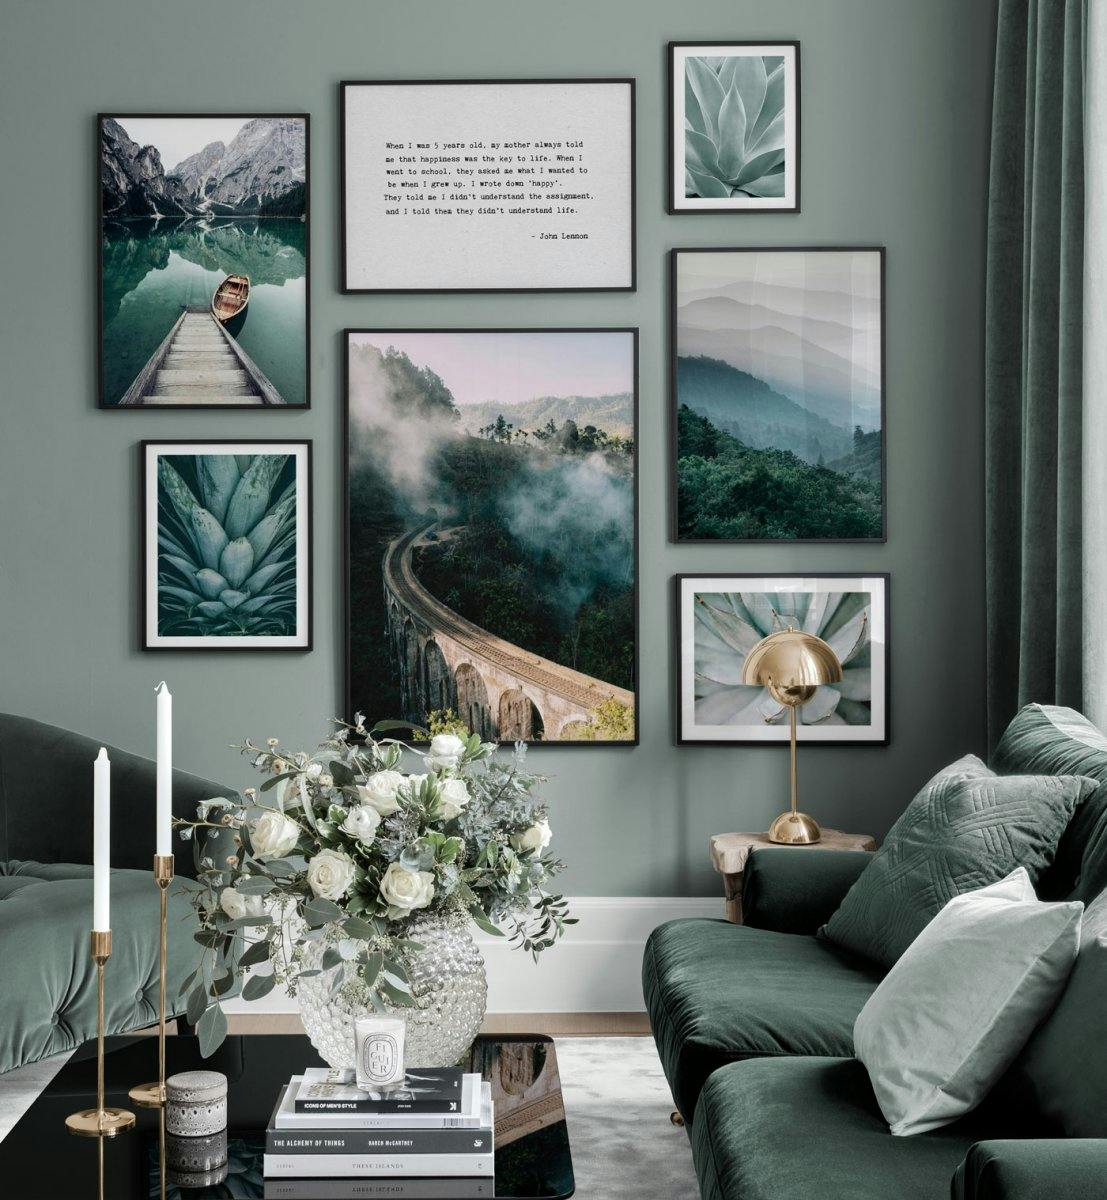 لوحات جدار أخضر وأزرق مع لوحات لصور ذات الطبيعة في إطارات بيضاء